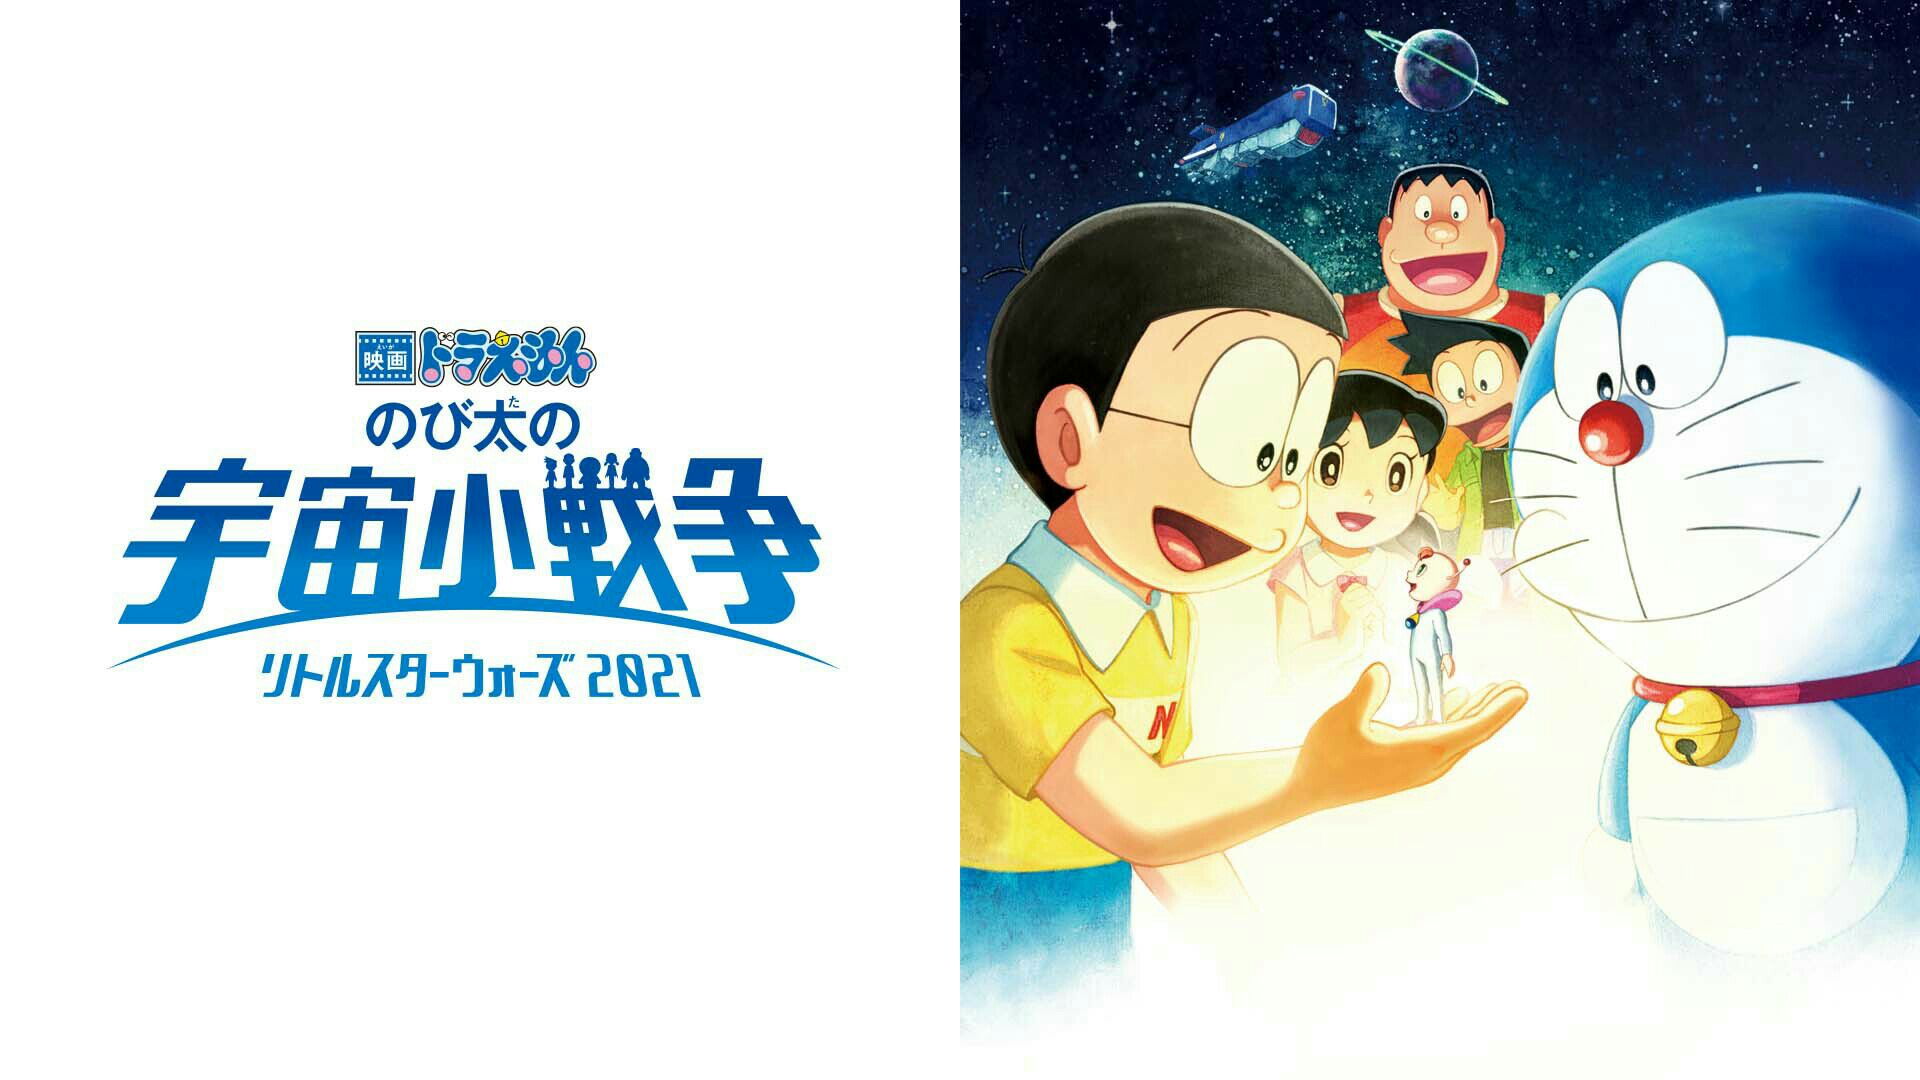 Doraemon Movie 41: Nobita's Little Space War 2021